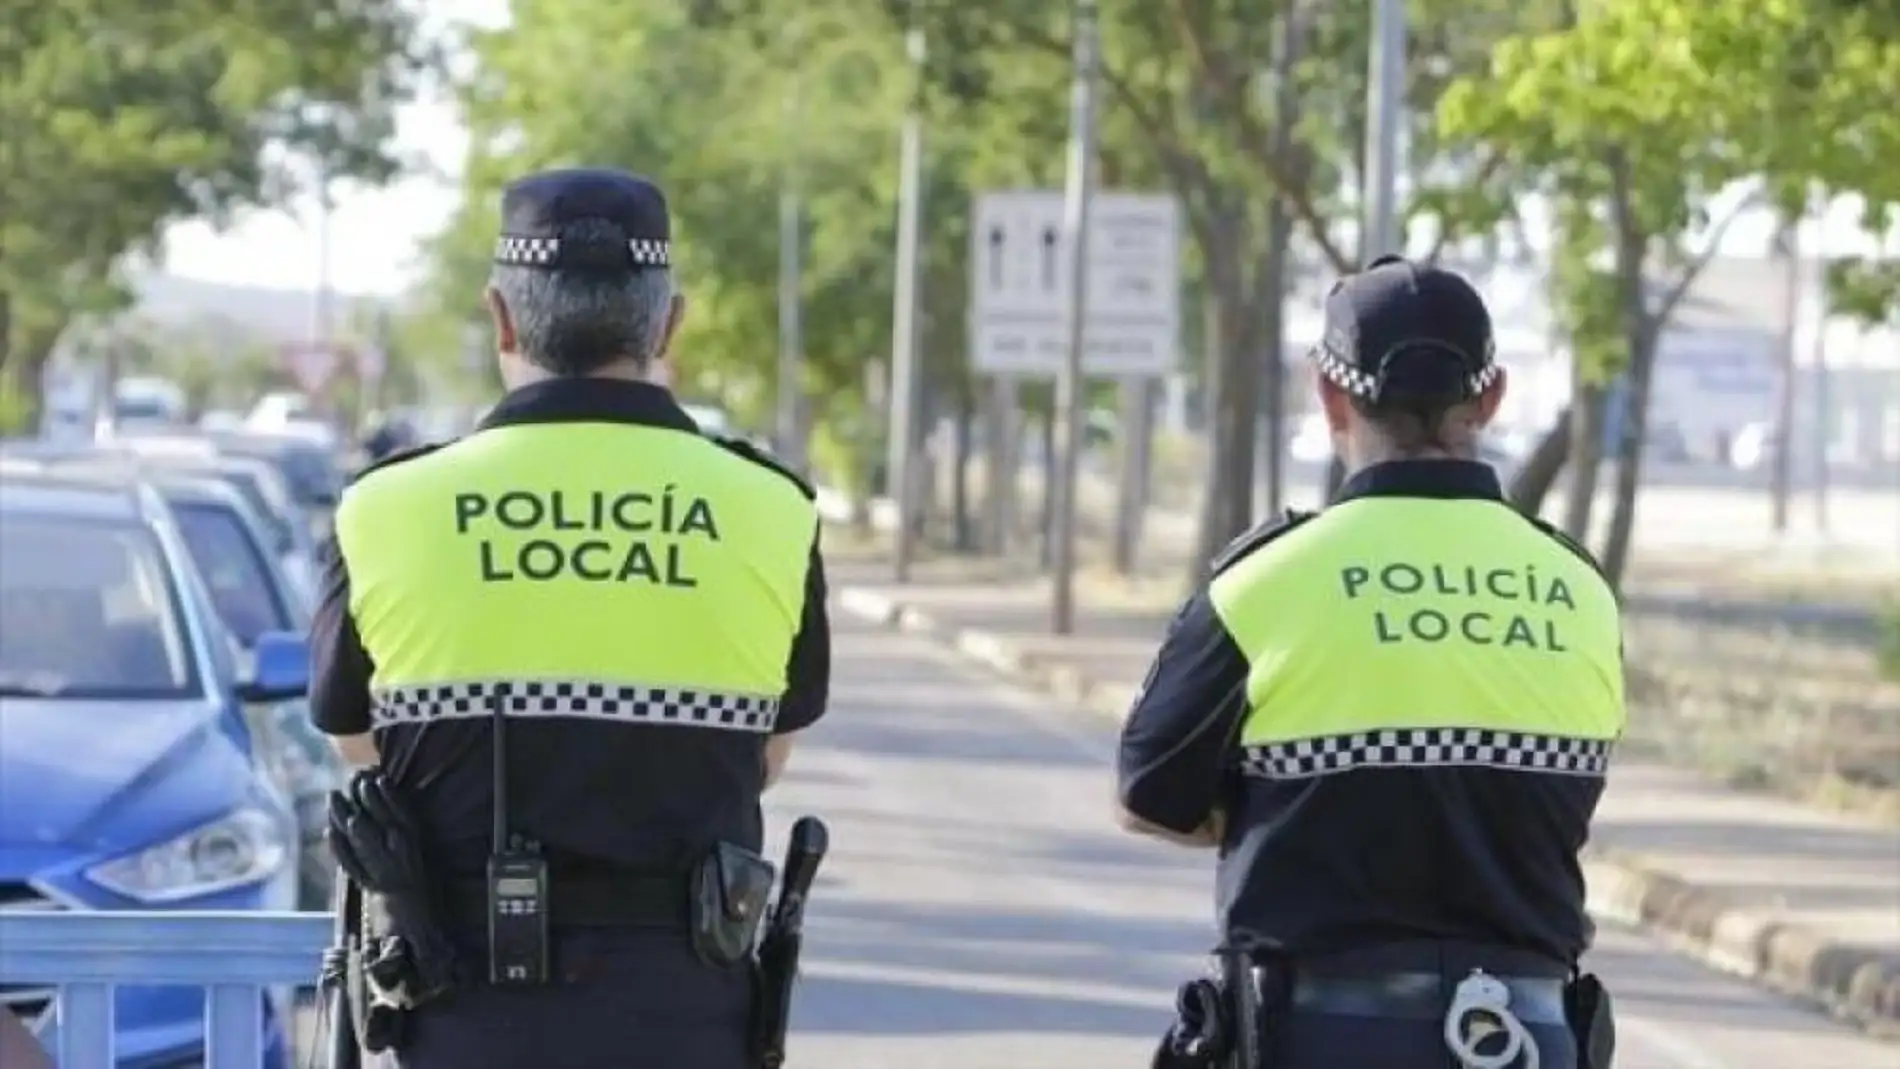 La Policía Local de Badajoz interpone 29 denuncias, la mayoría relacionadas con el uso de la mascarilla